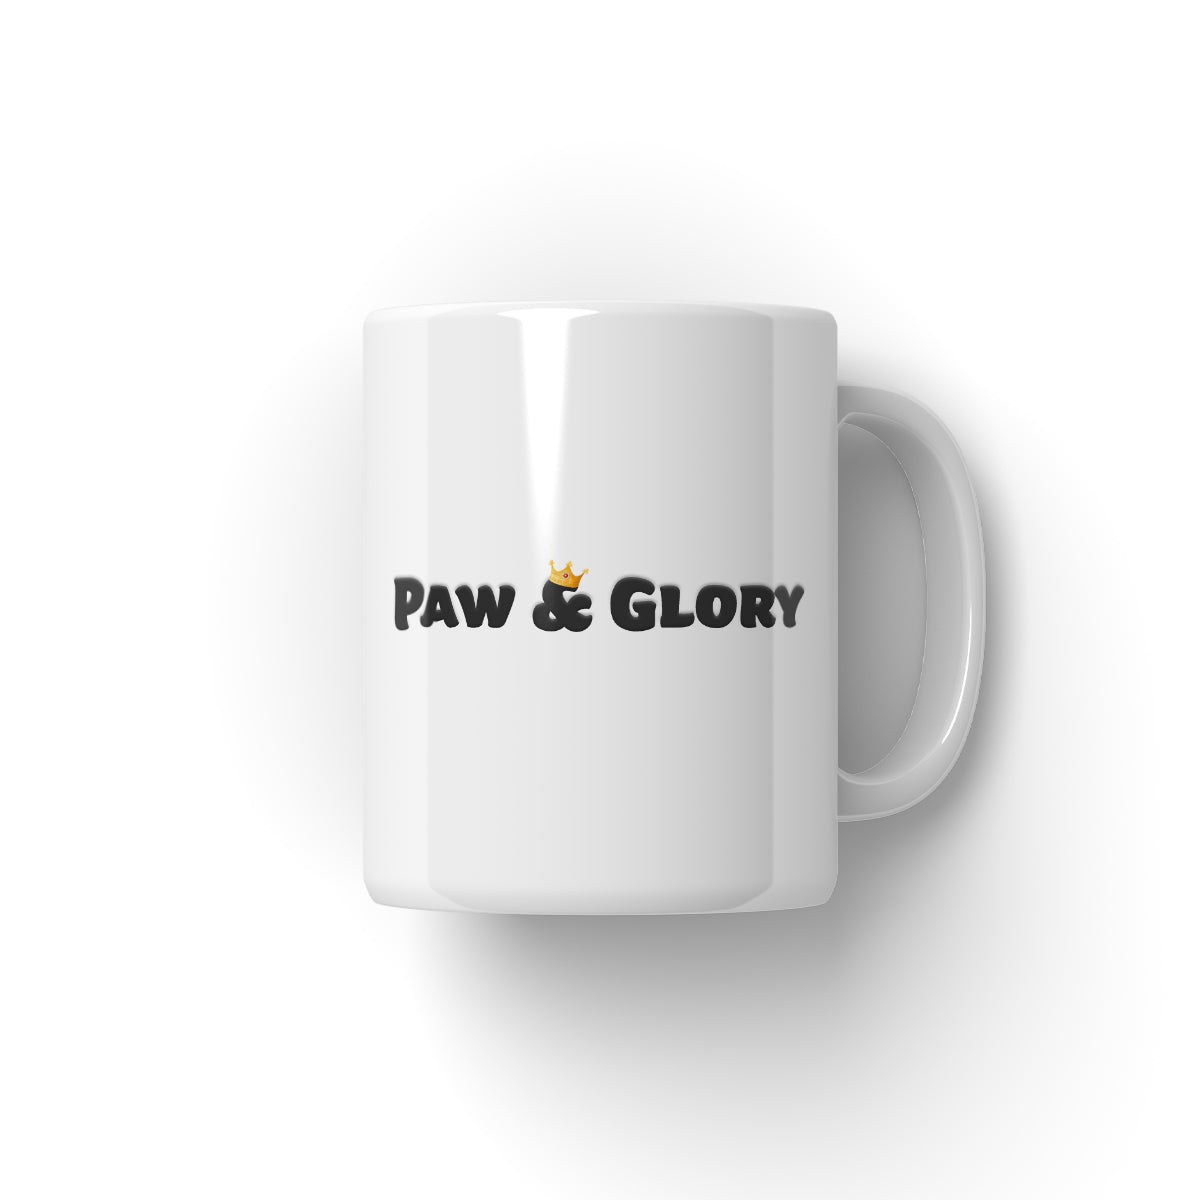 Paw & Glory, paw and glory, custom cat mug, pet art mug, personalized pet mugs, personalised mugs dog, personalized coffee mug with dogs, pet mug portraits, Pet Portrait Mug,